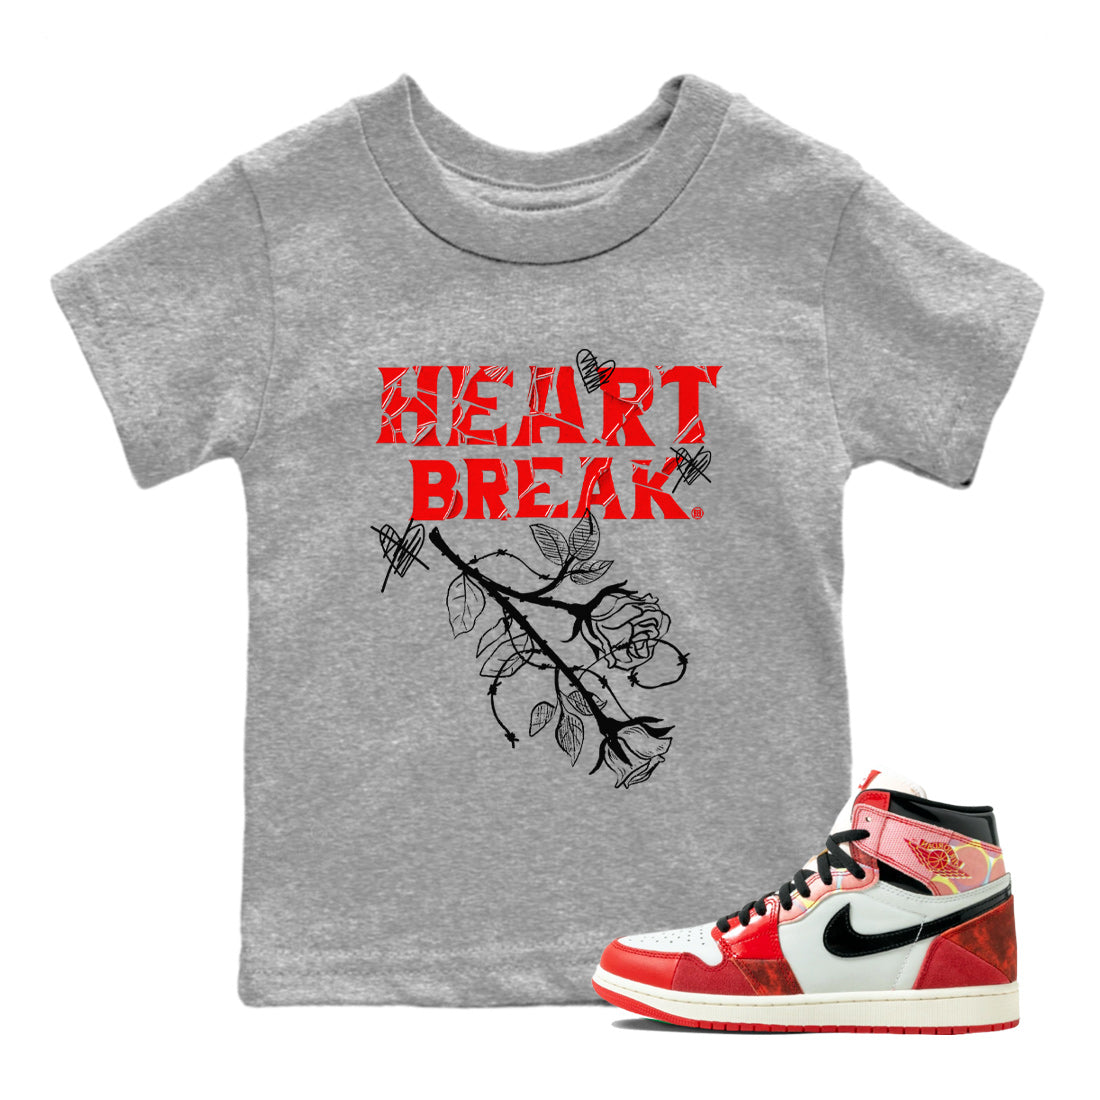 Air Jordan 1 Spider Man Sneaker Match Tees Heart Break Sneaker Release Tees Air Jordan 1 Spider Man T Shirt Kids Shirts Heather Grey 1